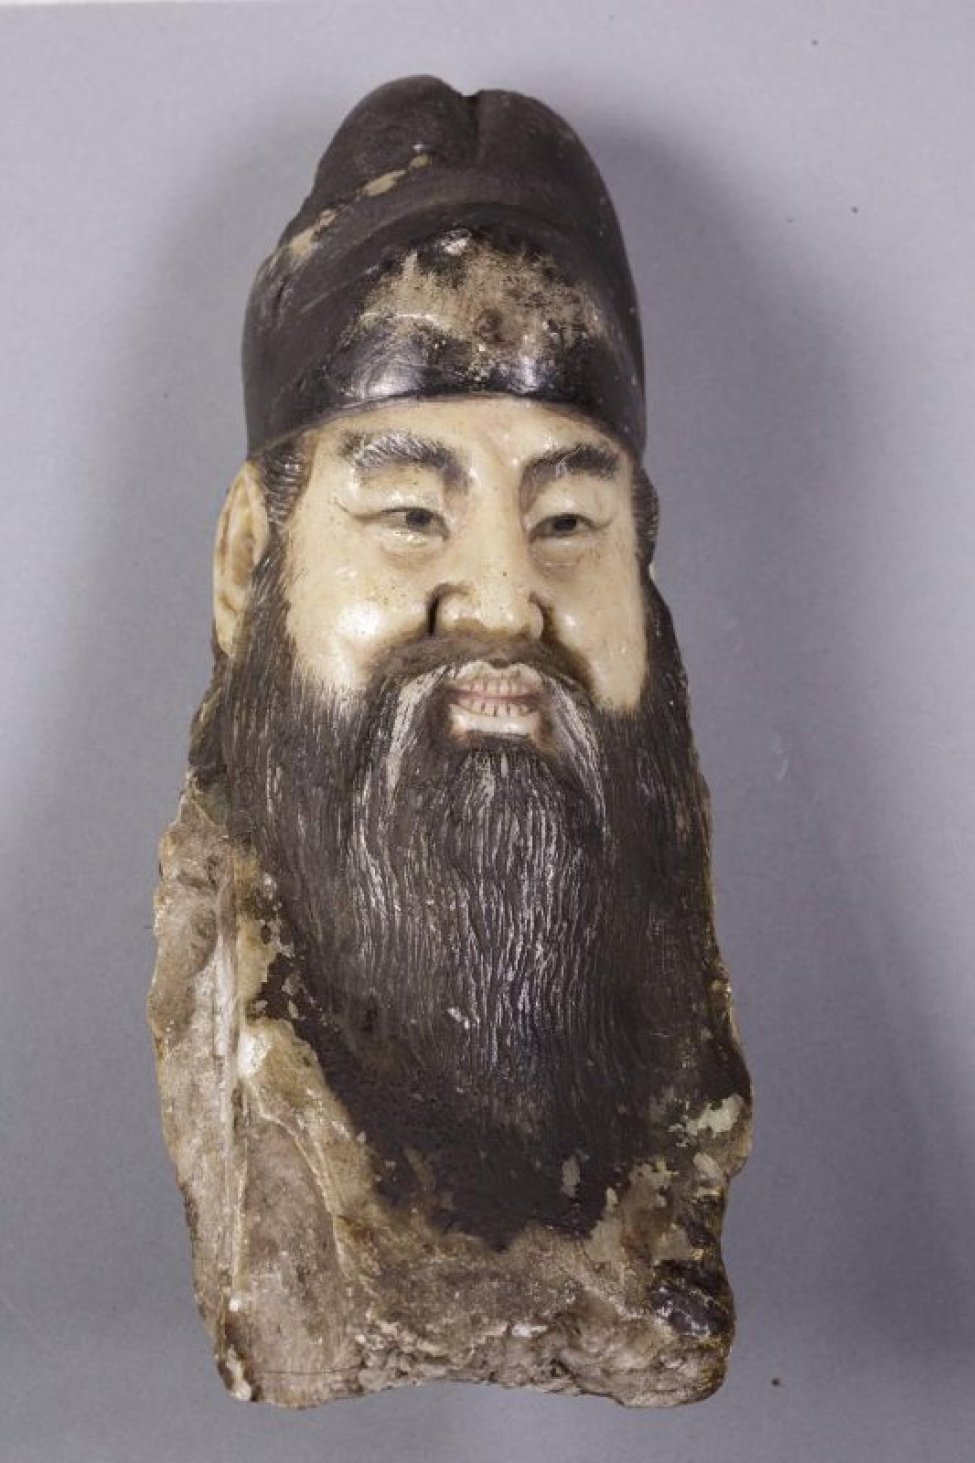 Китайский божок (часть предмета) изображает голову мужчины с китайским типом лица с длинной головой и усами, с полуоткрытым ртом, в котором видны зубы. На голве убор, окрашенный в черный цвет, как и борода, волосы, брови, глаза. Голова не в полном объеме - затылка нет.